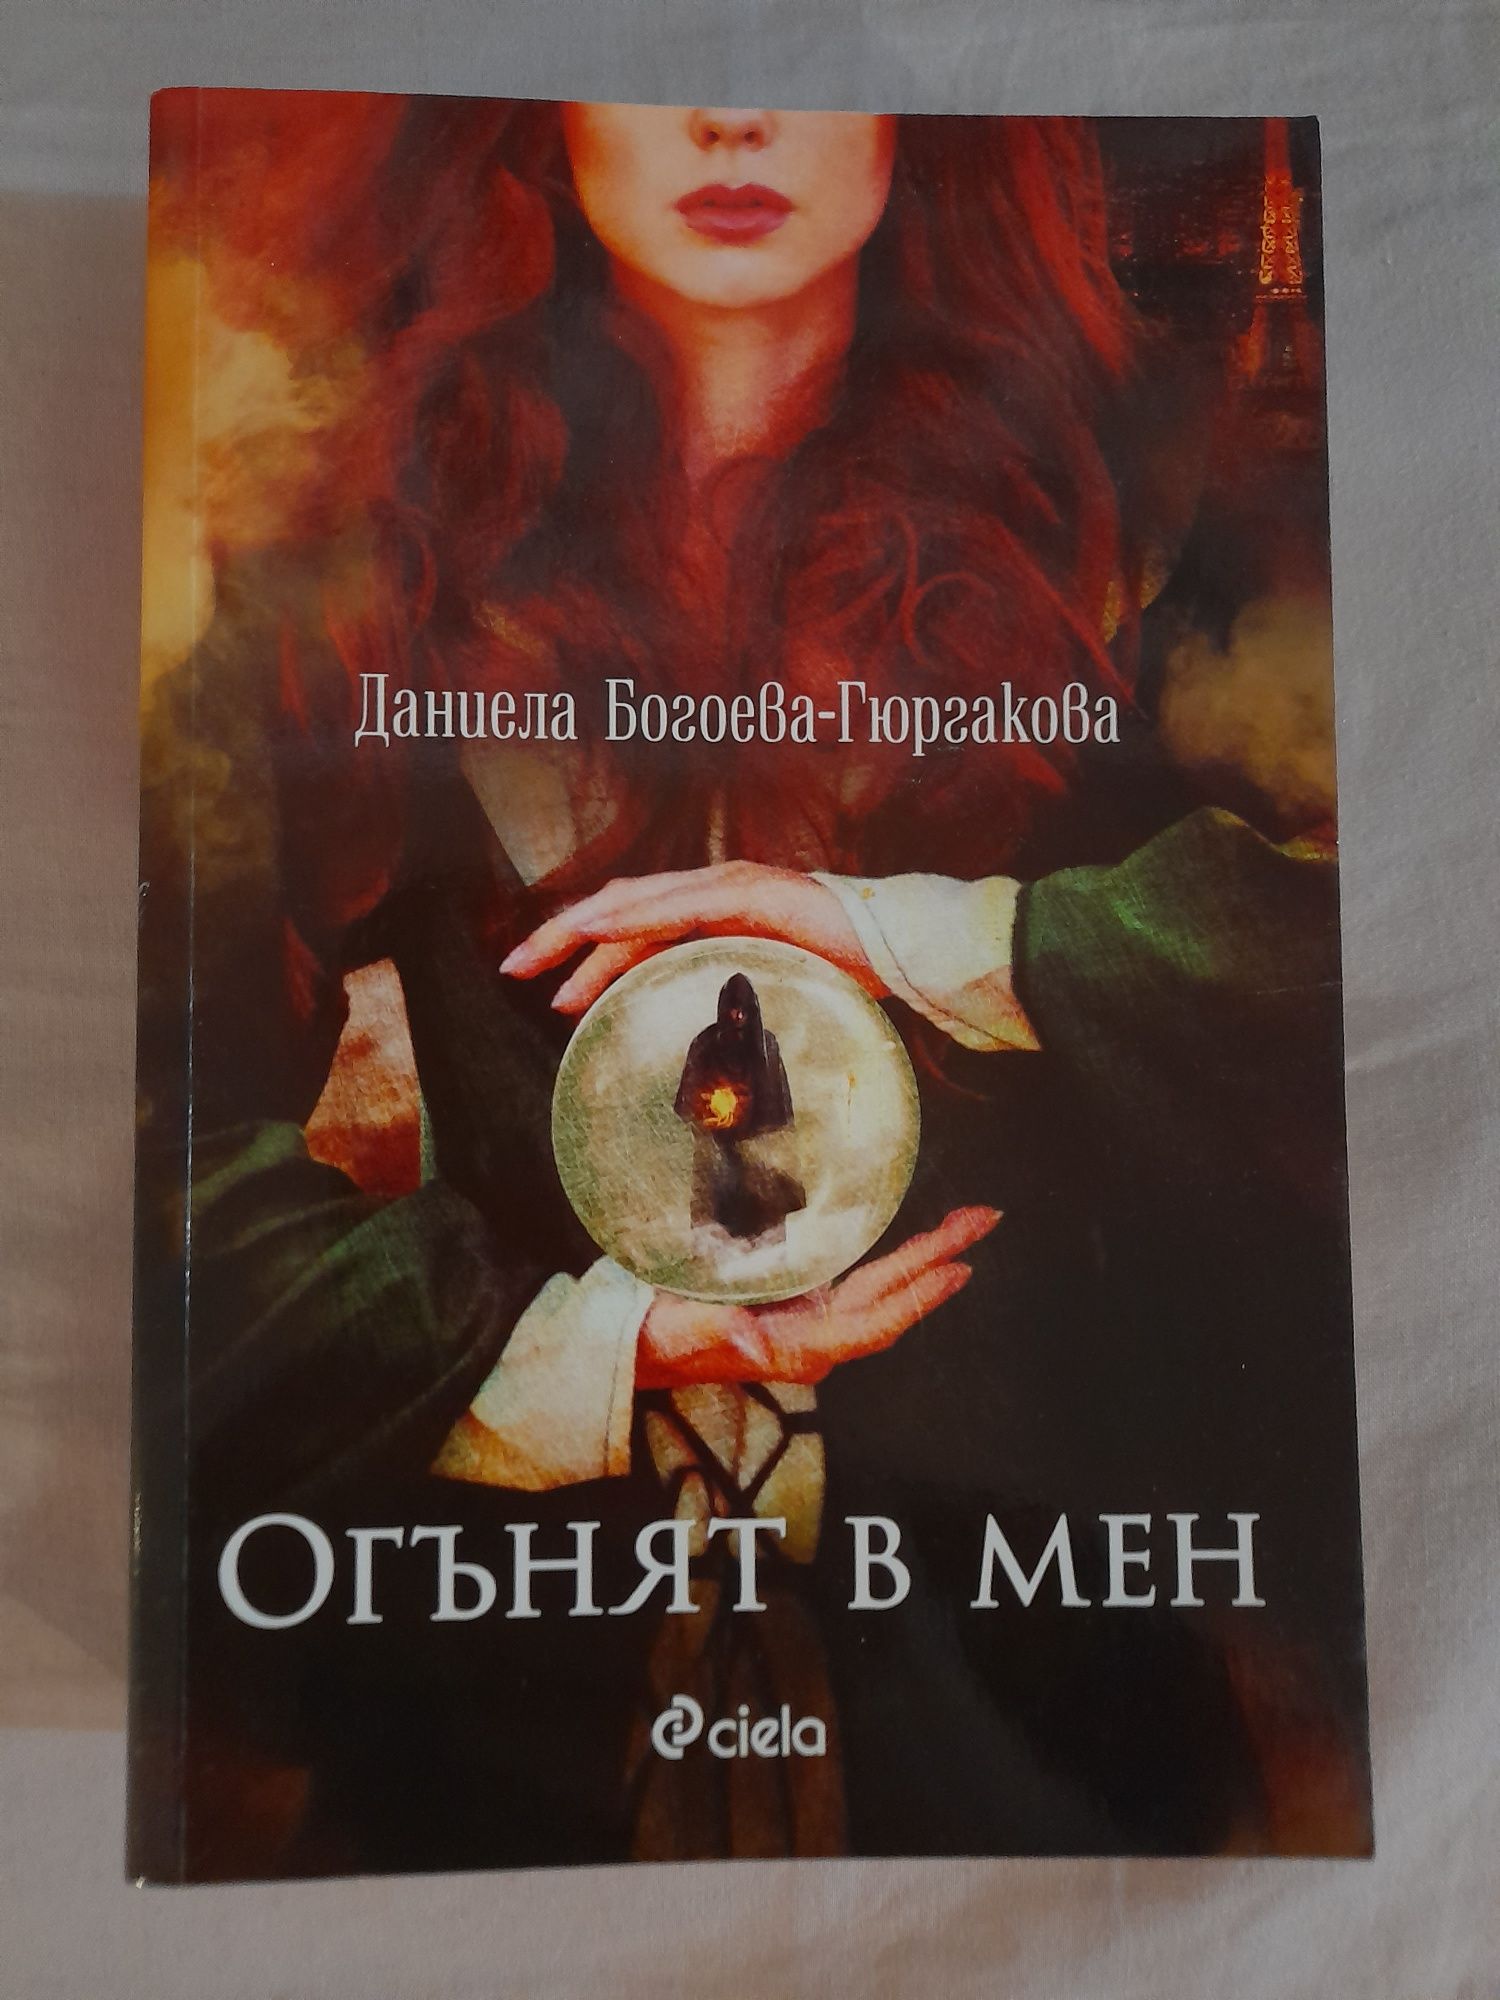 Даниела Богоева-Гюргакова-"Огънят в мен"